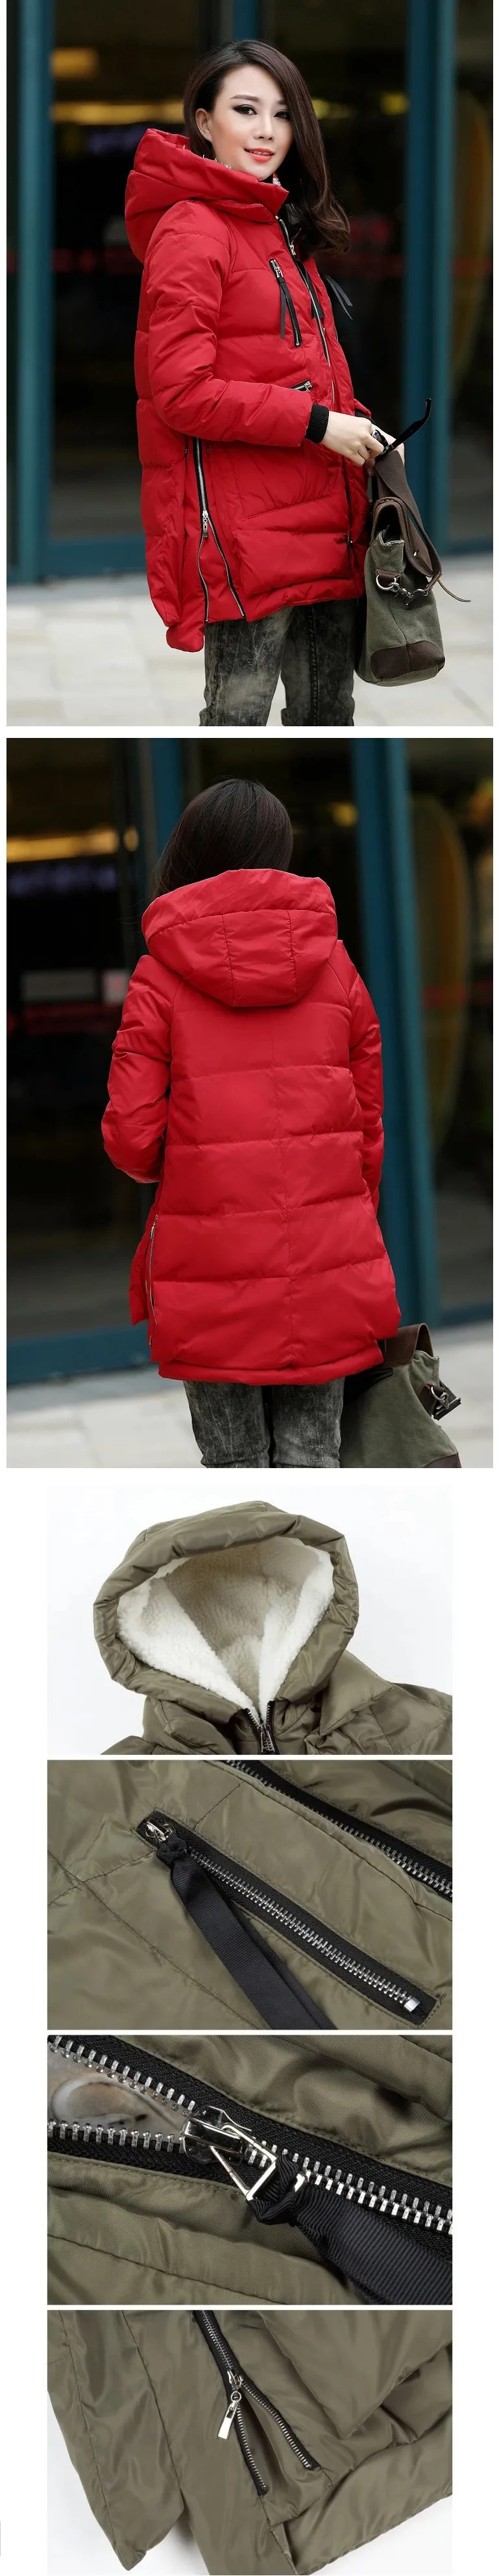 AILOOGE, зимняя женская куртка, новинка, европейский стиль, модное Свободное пальто для женщин, средней длины размера плюс, парка, куртки для женщин